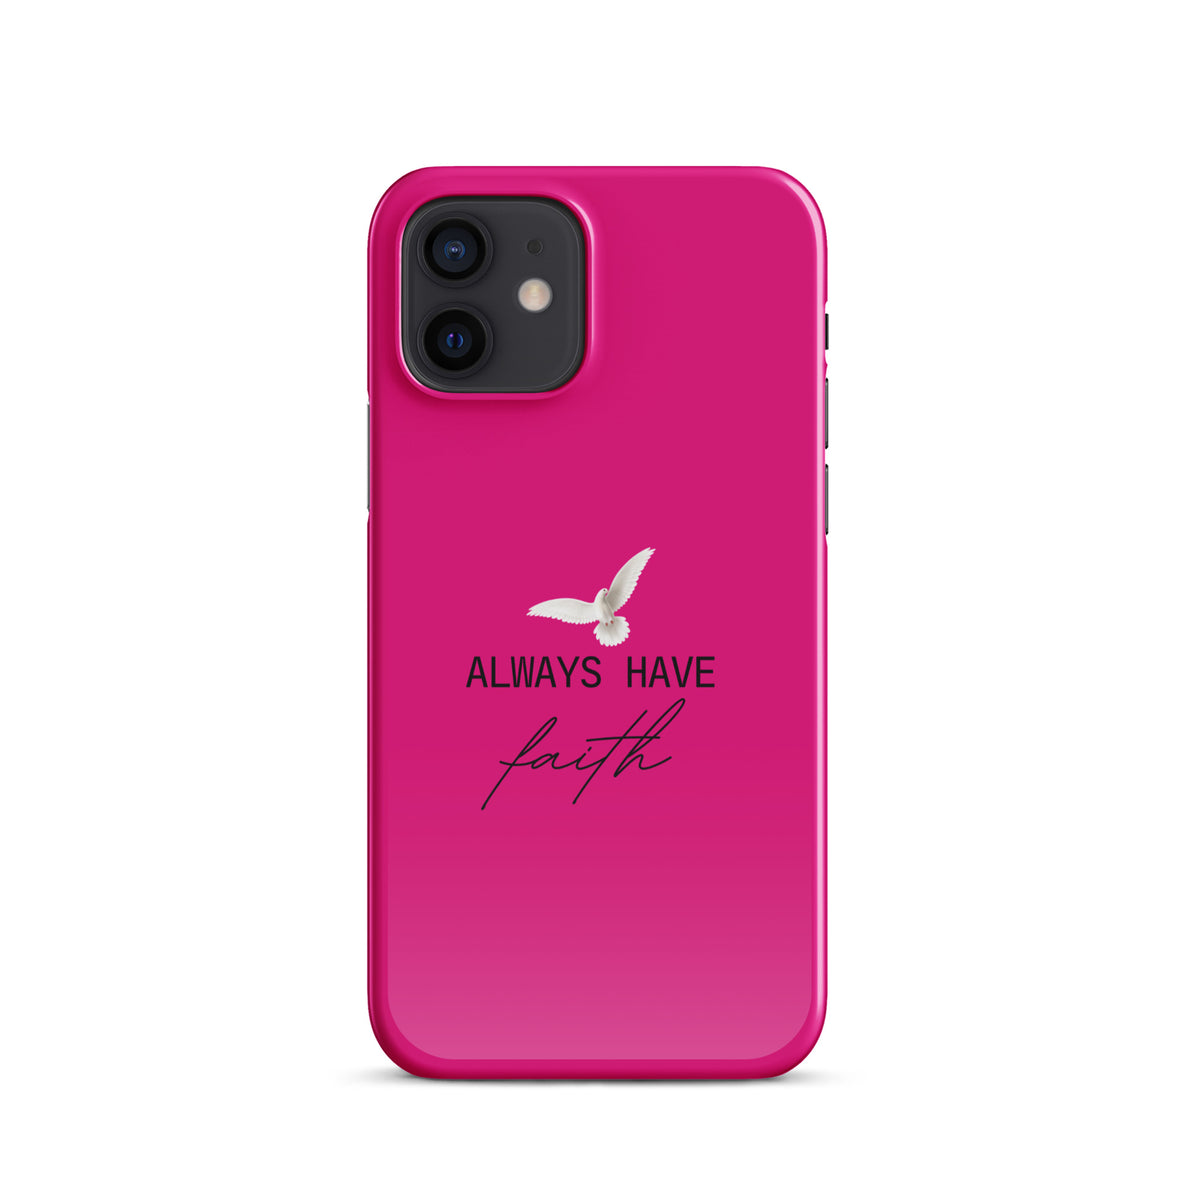 Always Have Faith Snap case for iPhone® - Fuchsia